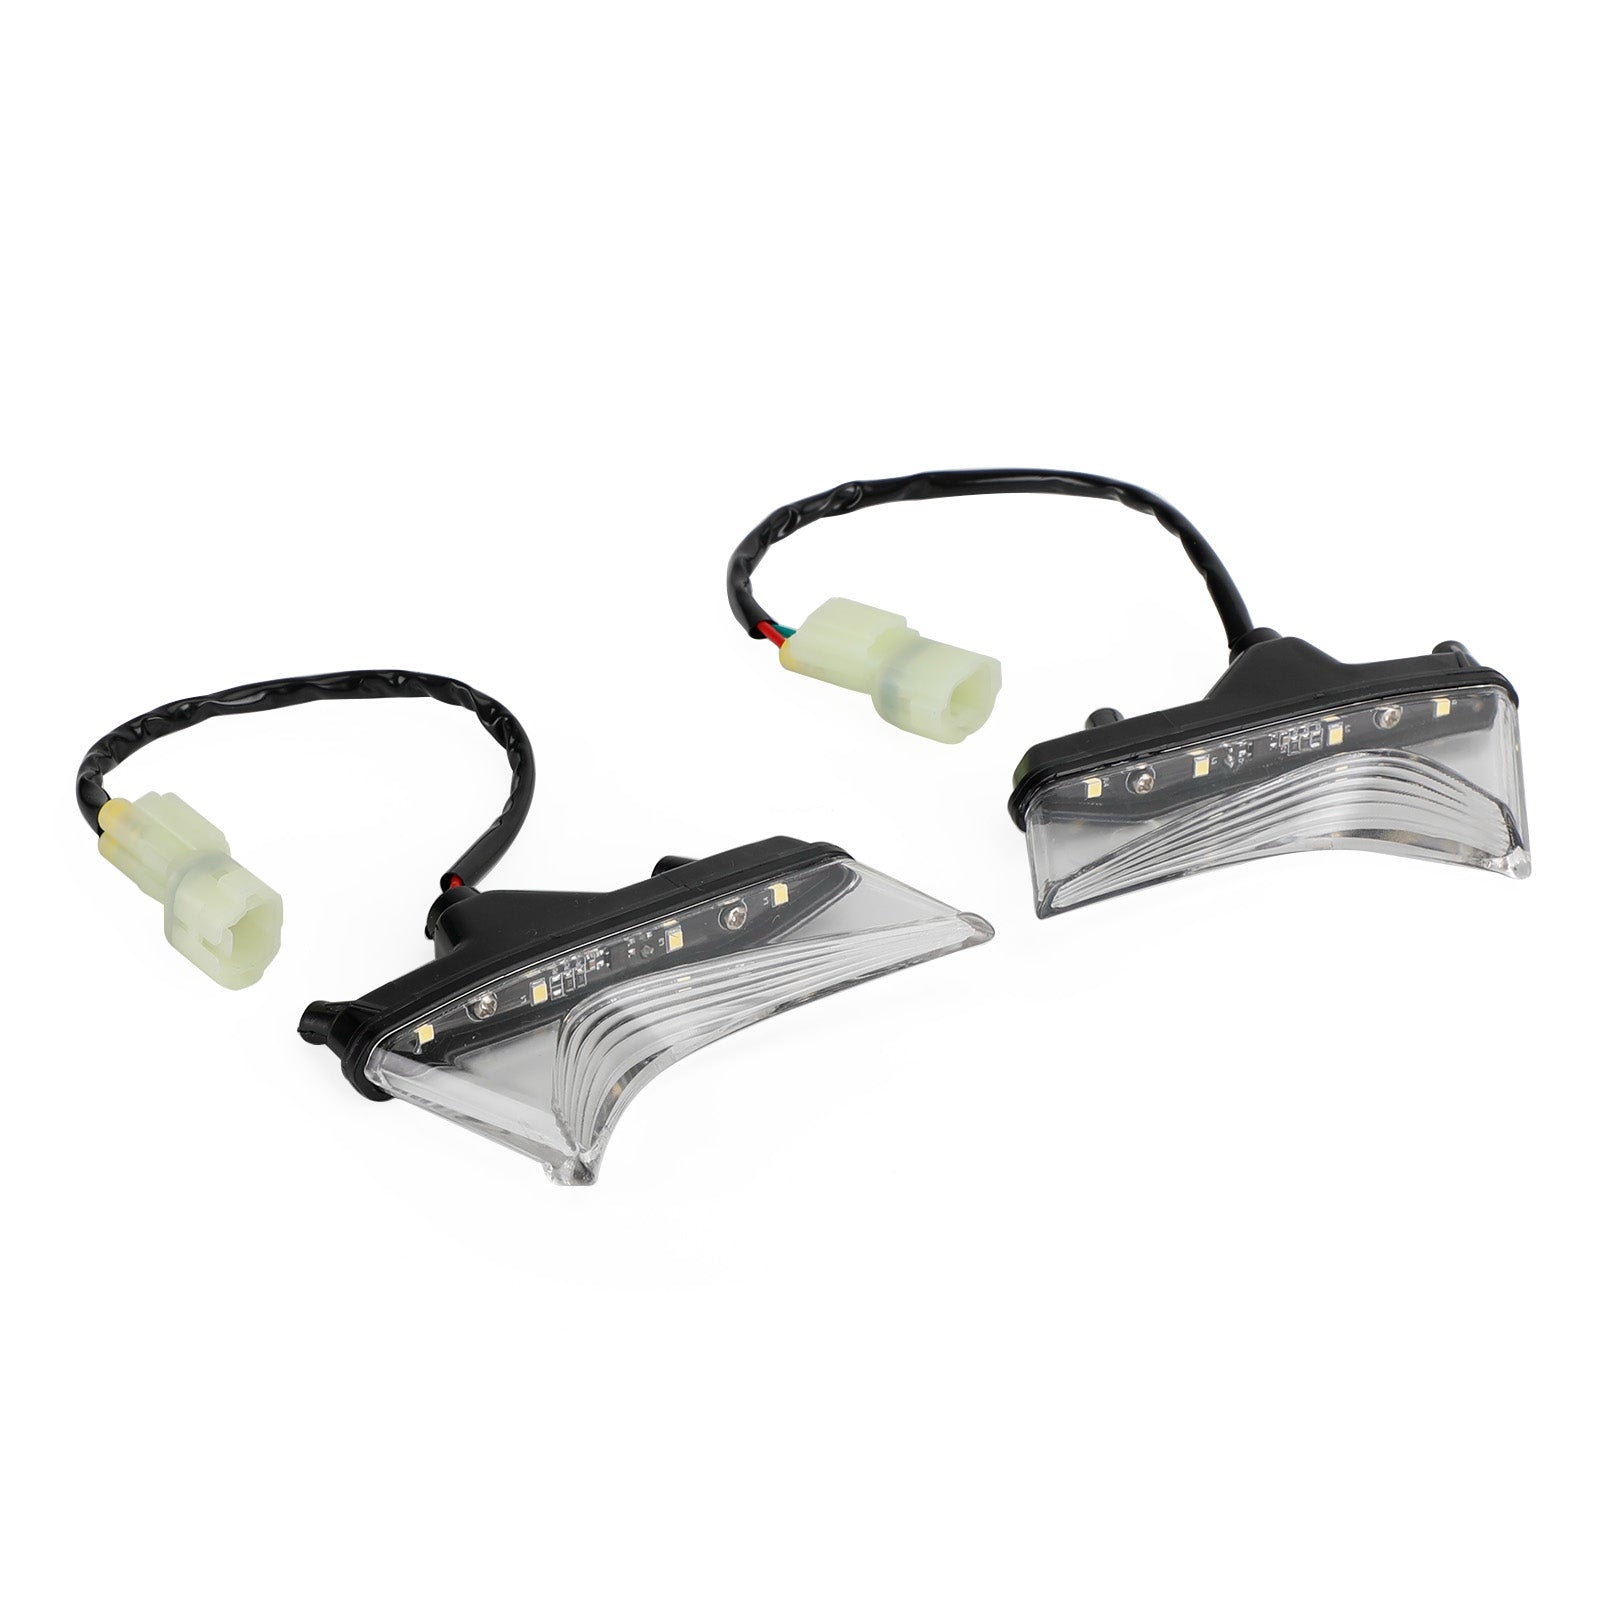 LED Front Daytime Running Lights Headlight For KAWASAKI Z900 2020-2022